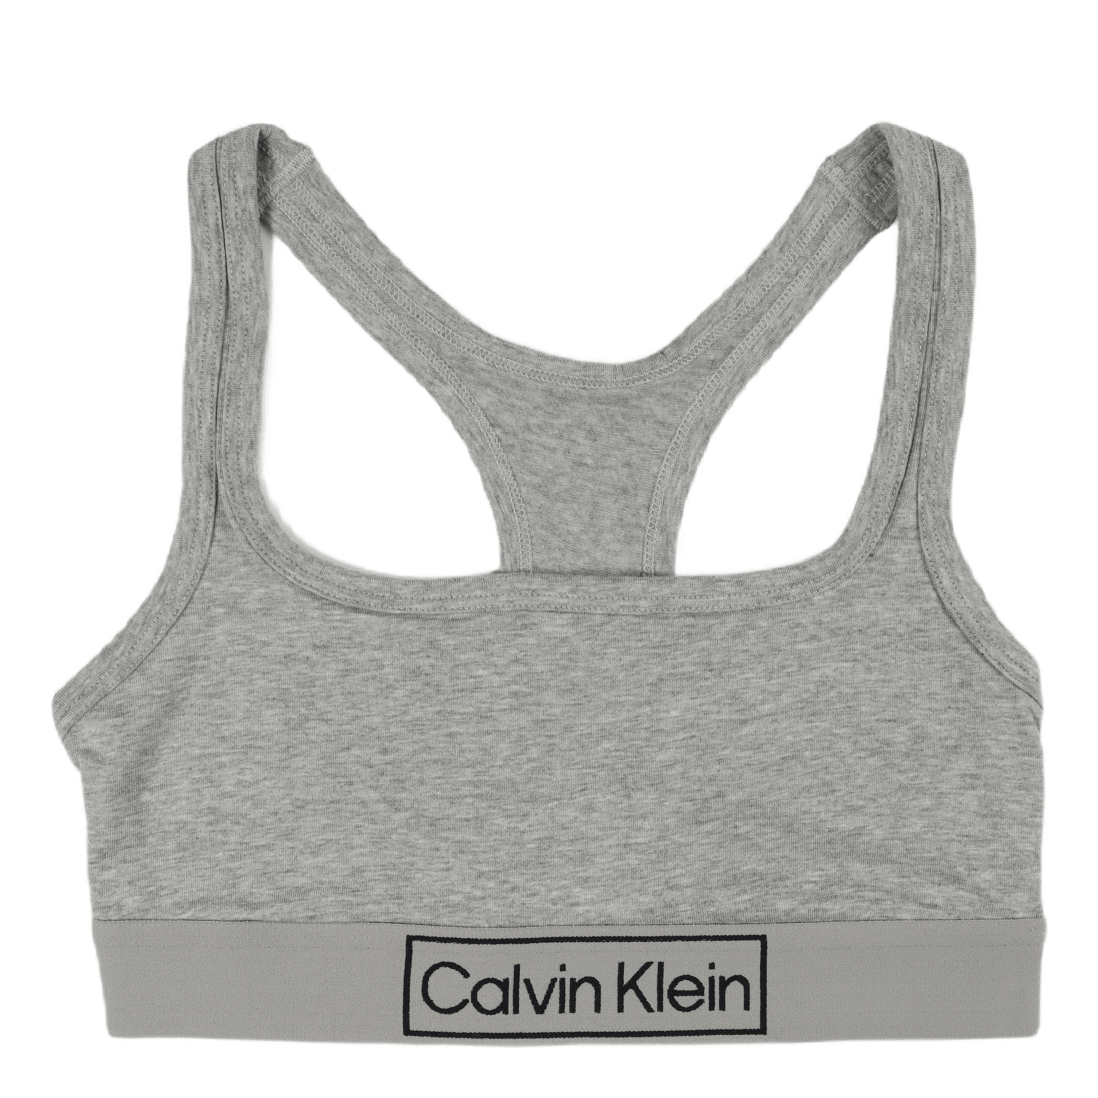 Calvin Klein - MODERN COTTON BRALETTE UNLINED in Grey Heather